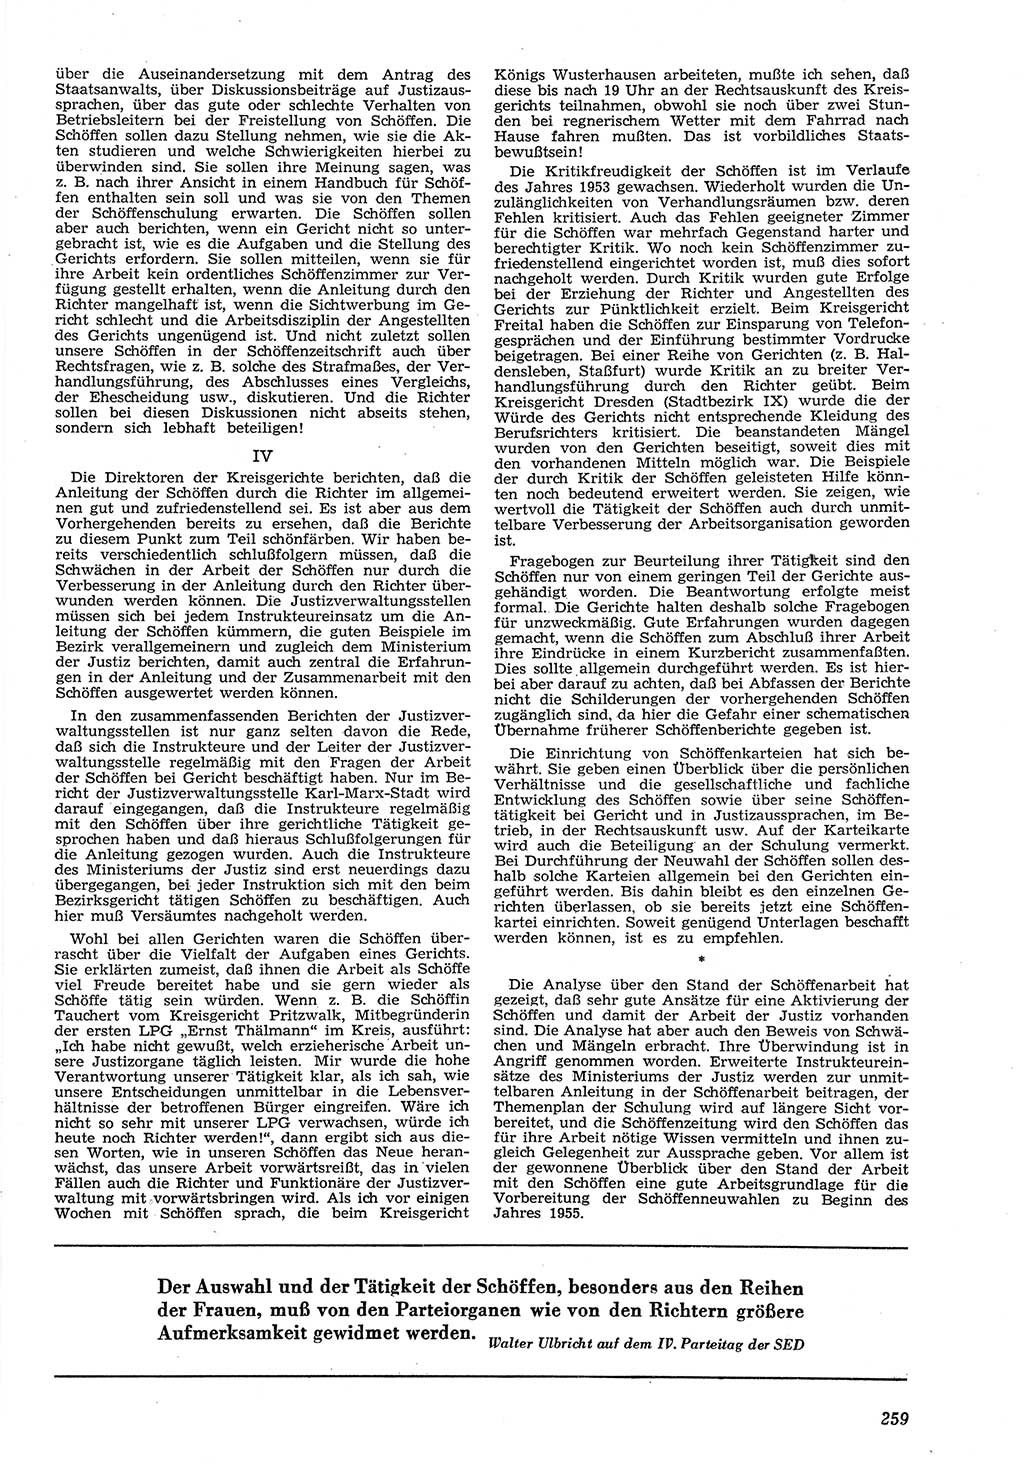 Neue Justiz (NJ), Zeitschrift für Recht und Rechtswissenschaft [Deutsche Demokratische Republik (DDR)], 8. Jahrgang 1954, Seite 259 (NJ DDR 1954, S. 259)